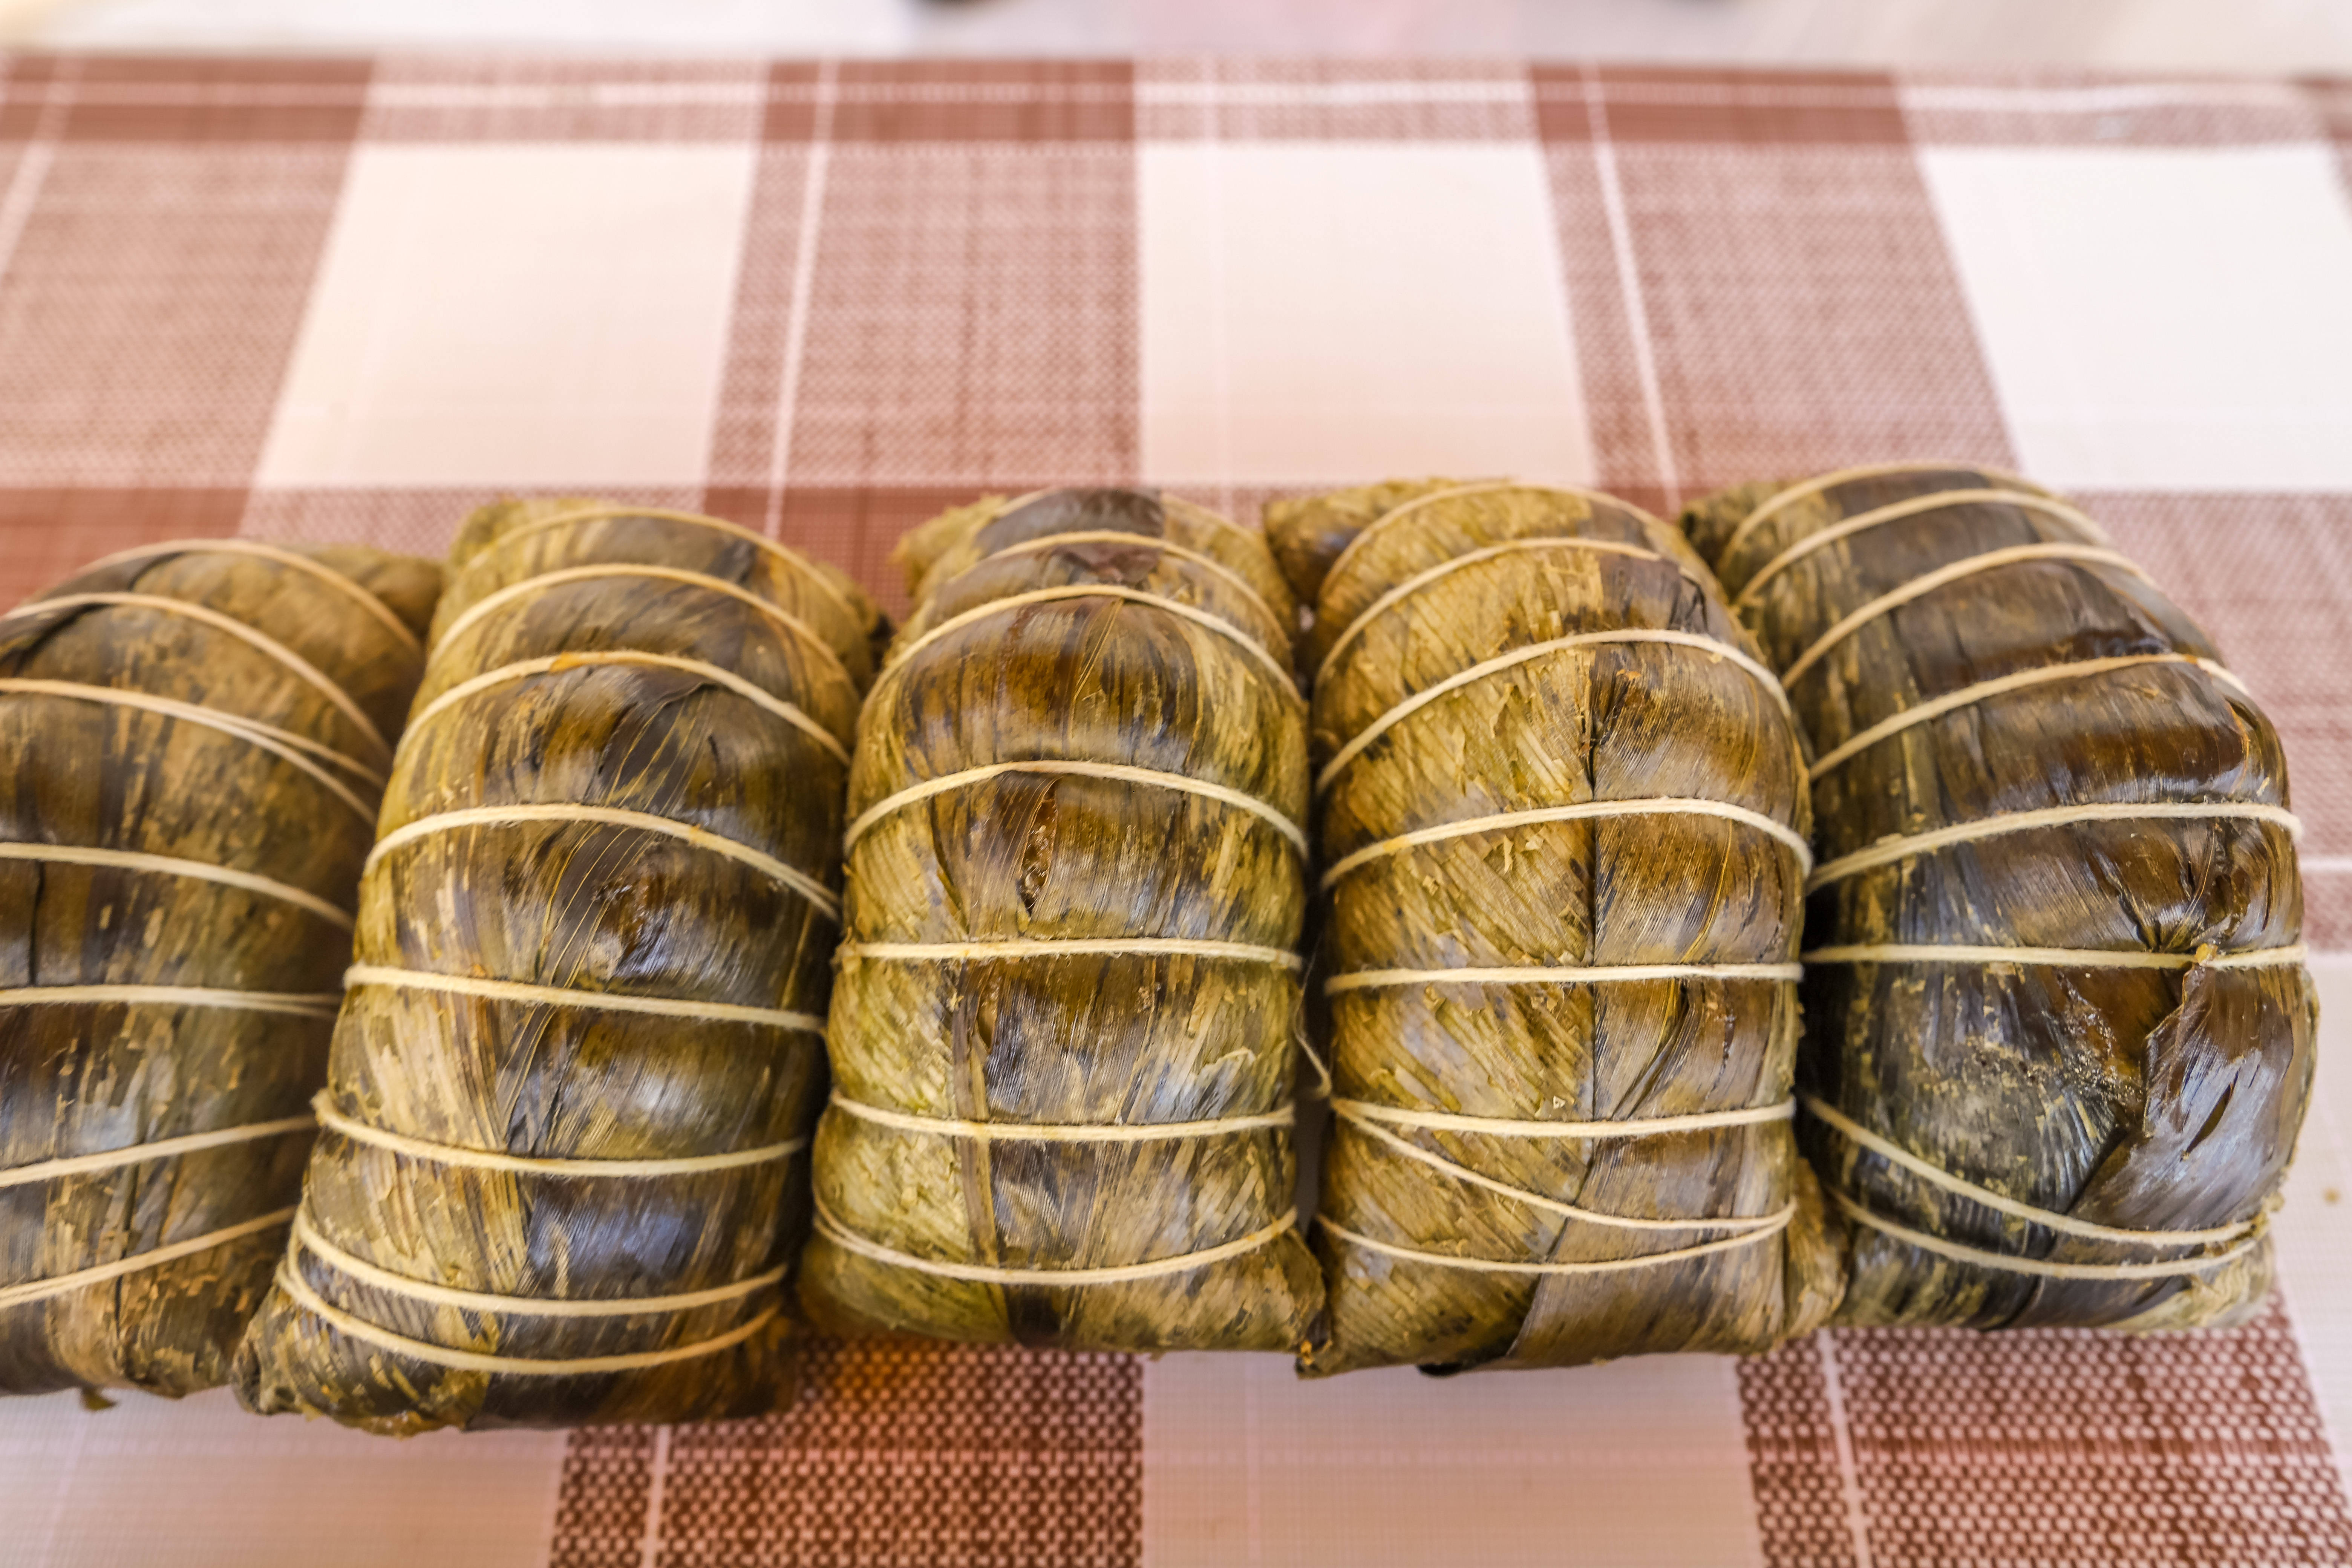 古粽籺即是广州的粽子,但它的形状是粒状的,由粽叶包裹糯米蒸制成就已